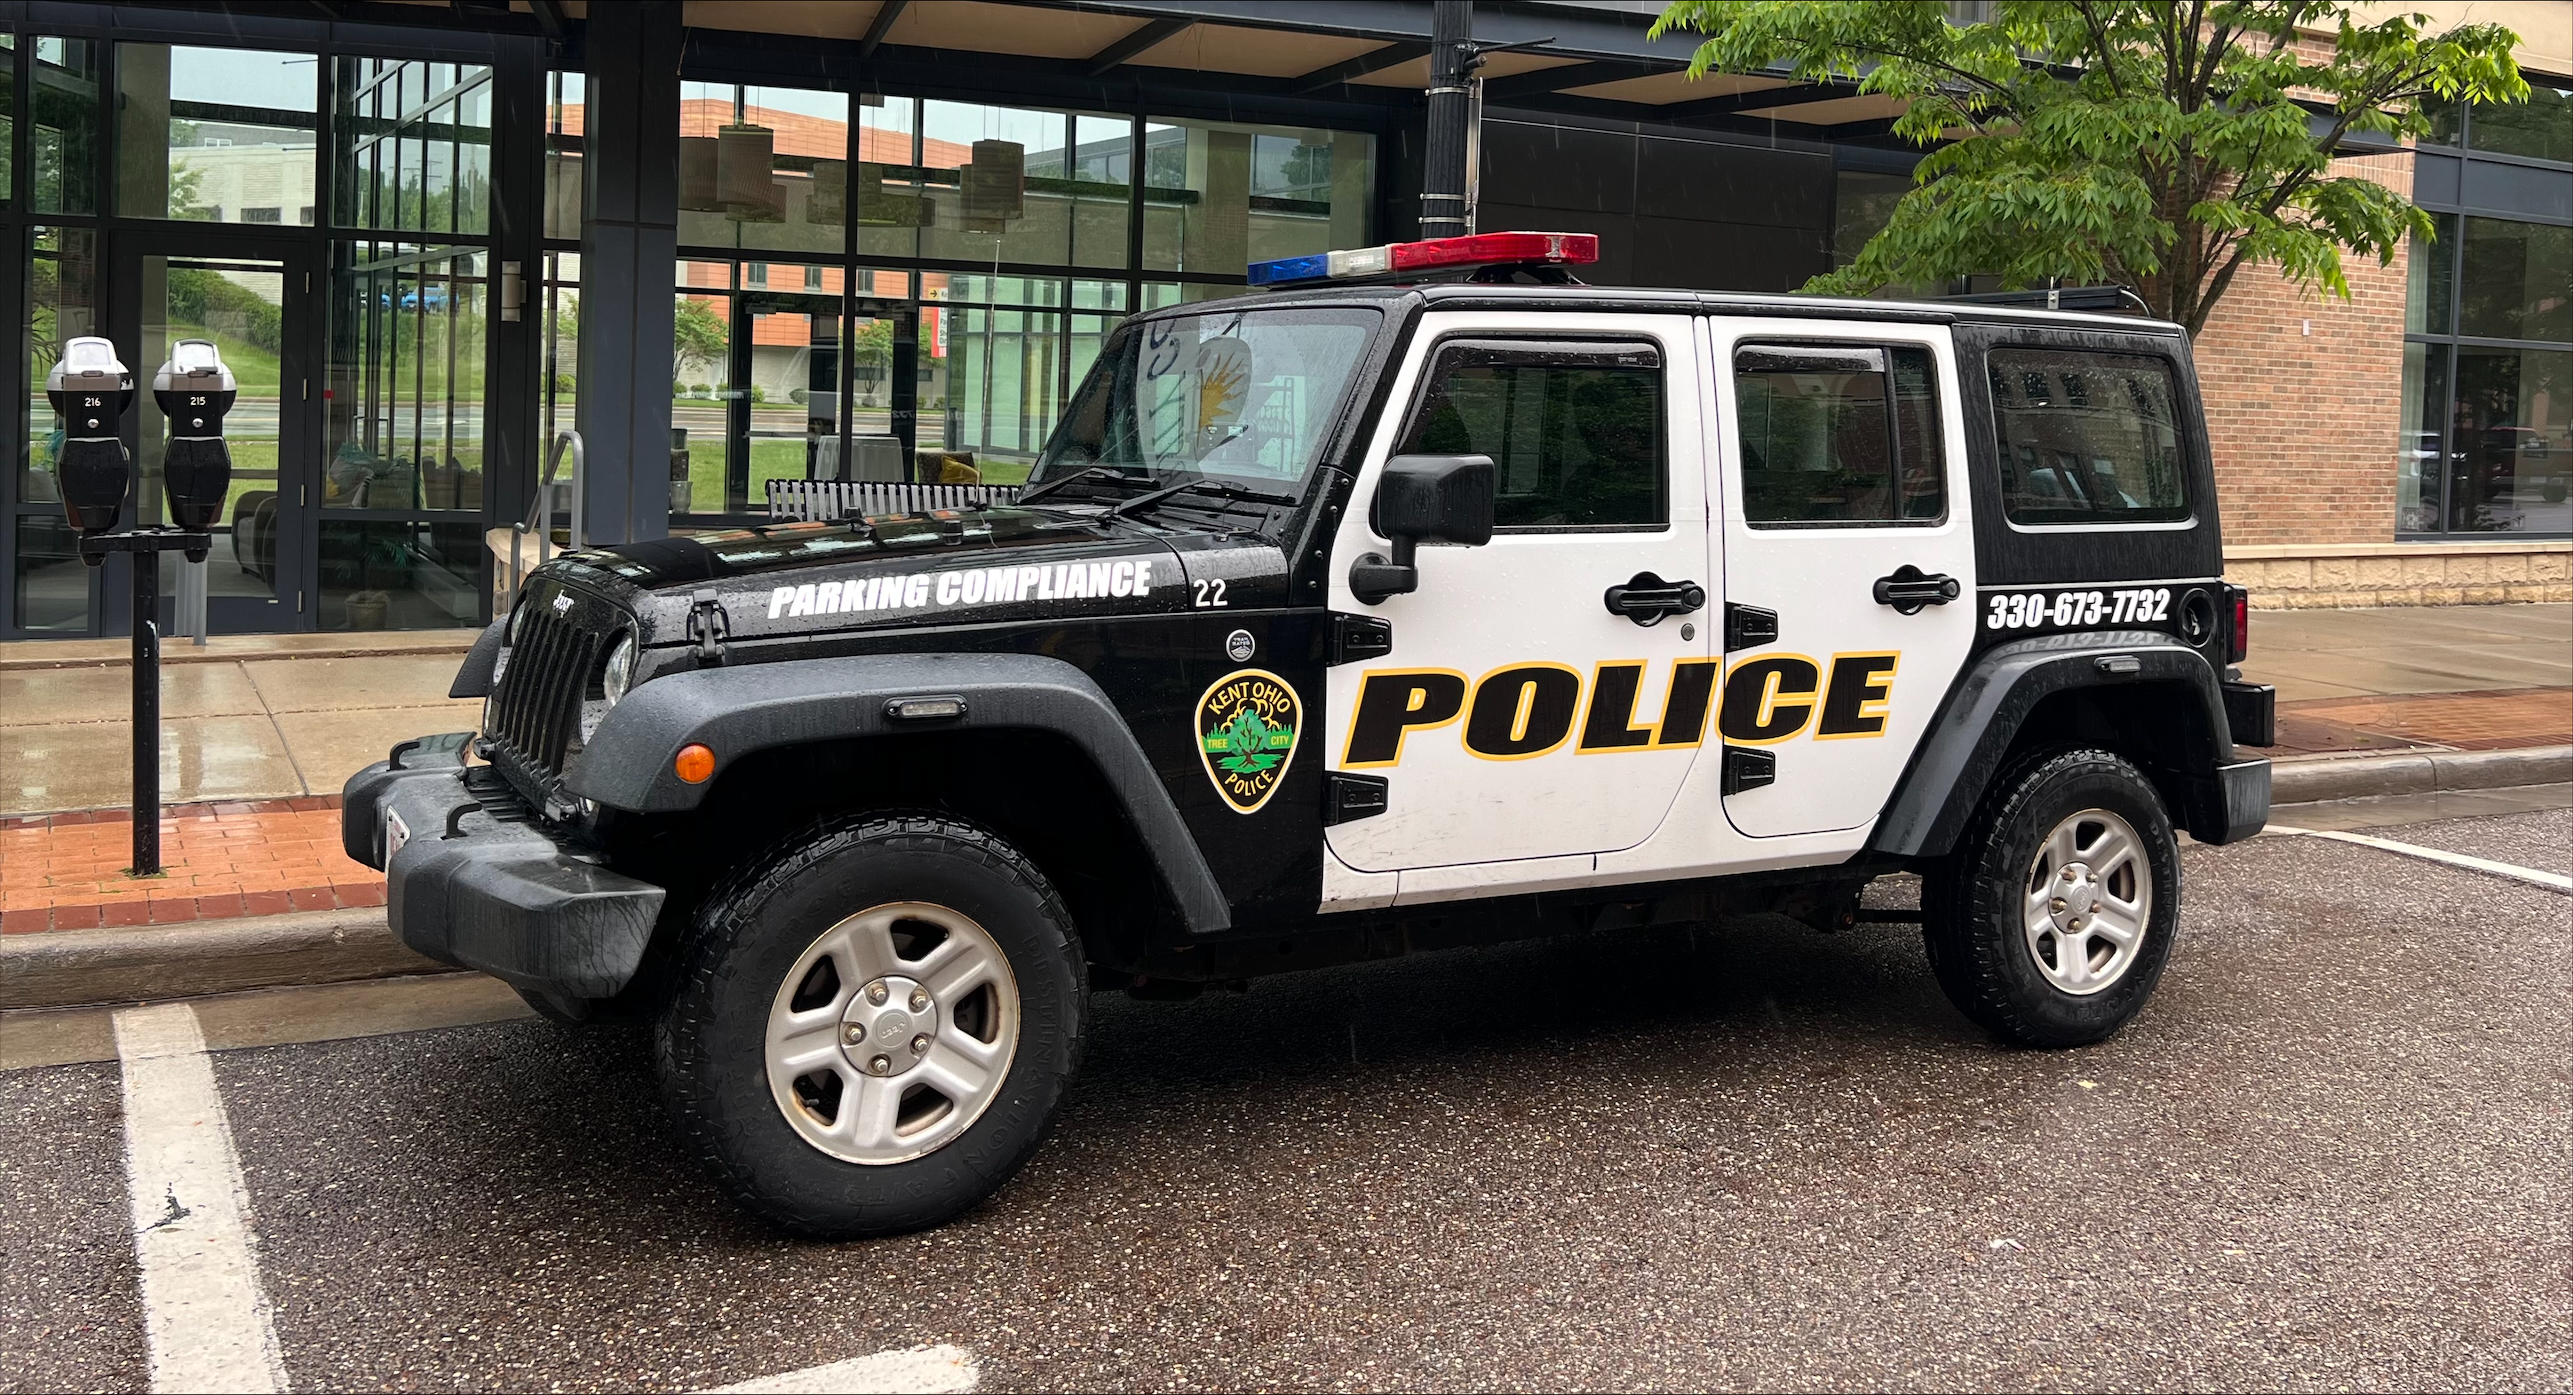 KPD Parking Enforcement Jeep